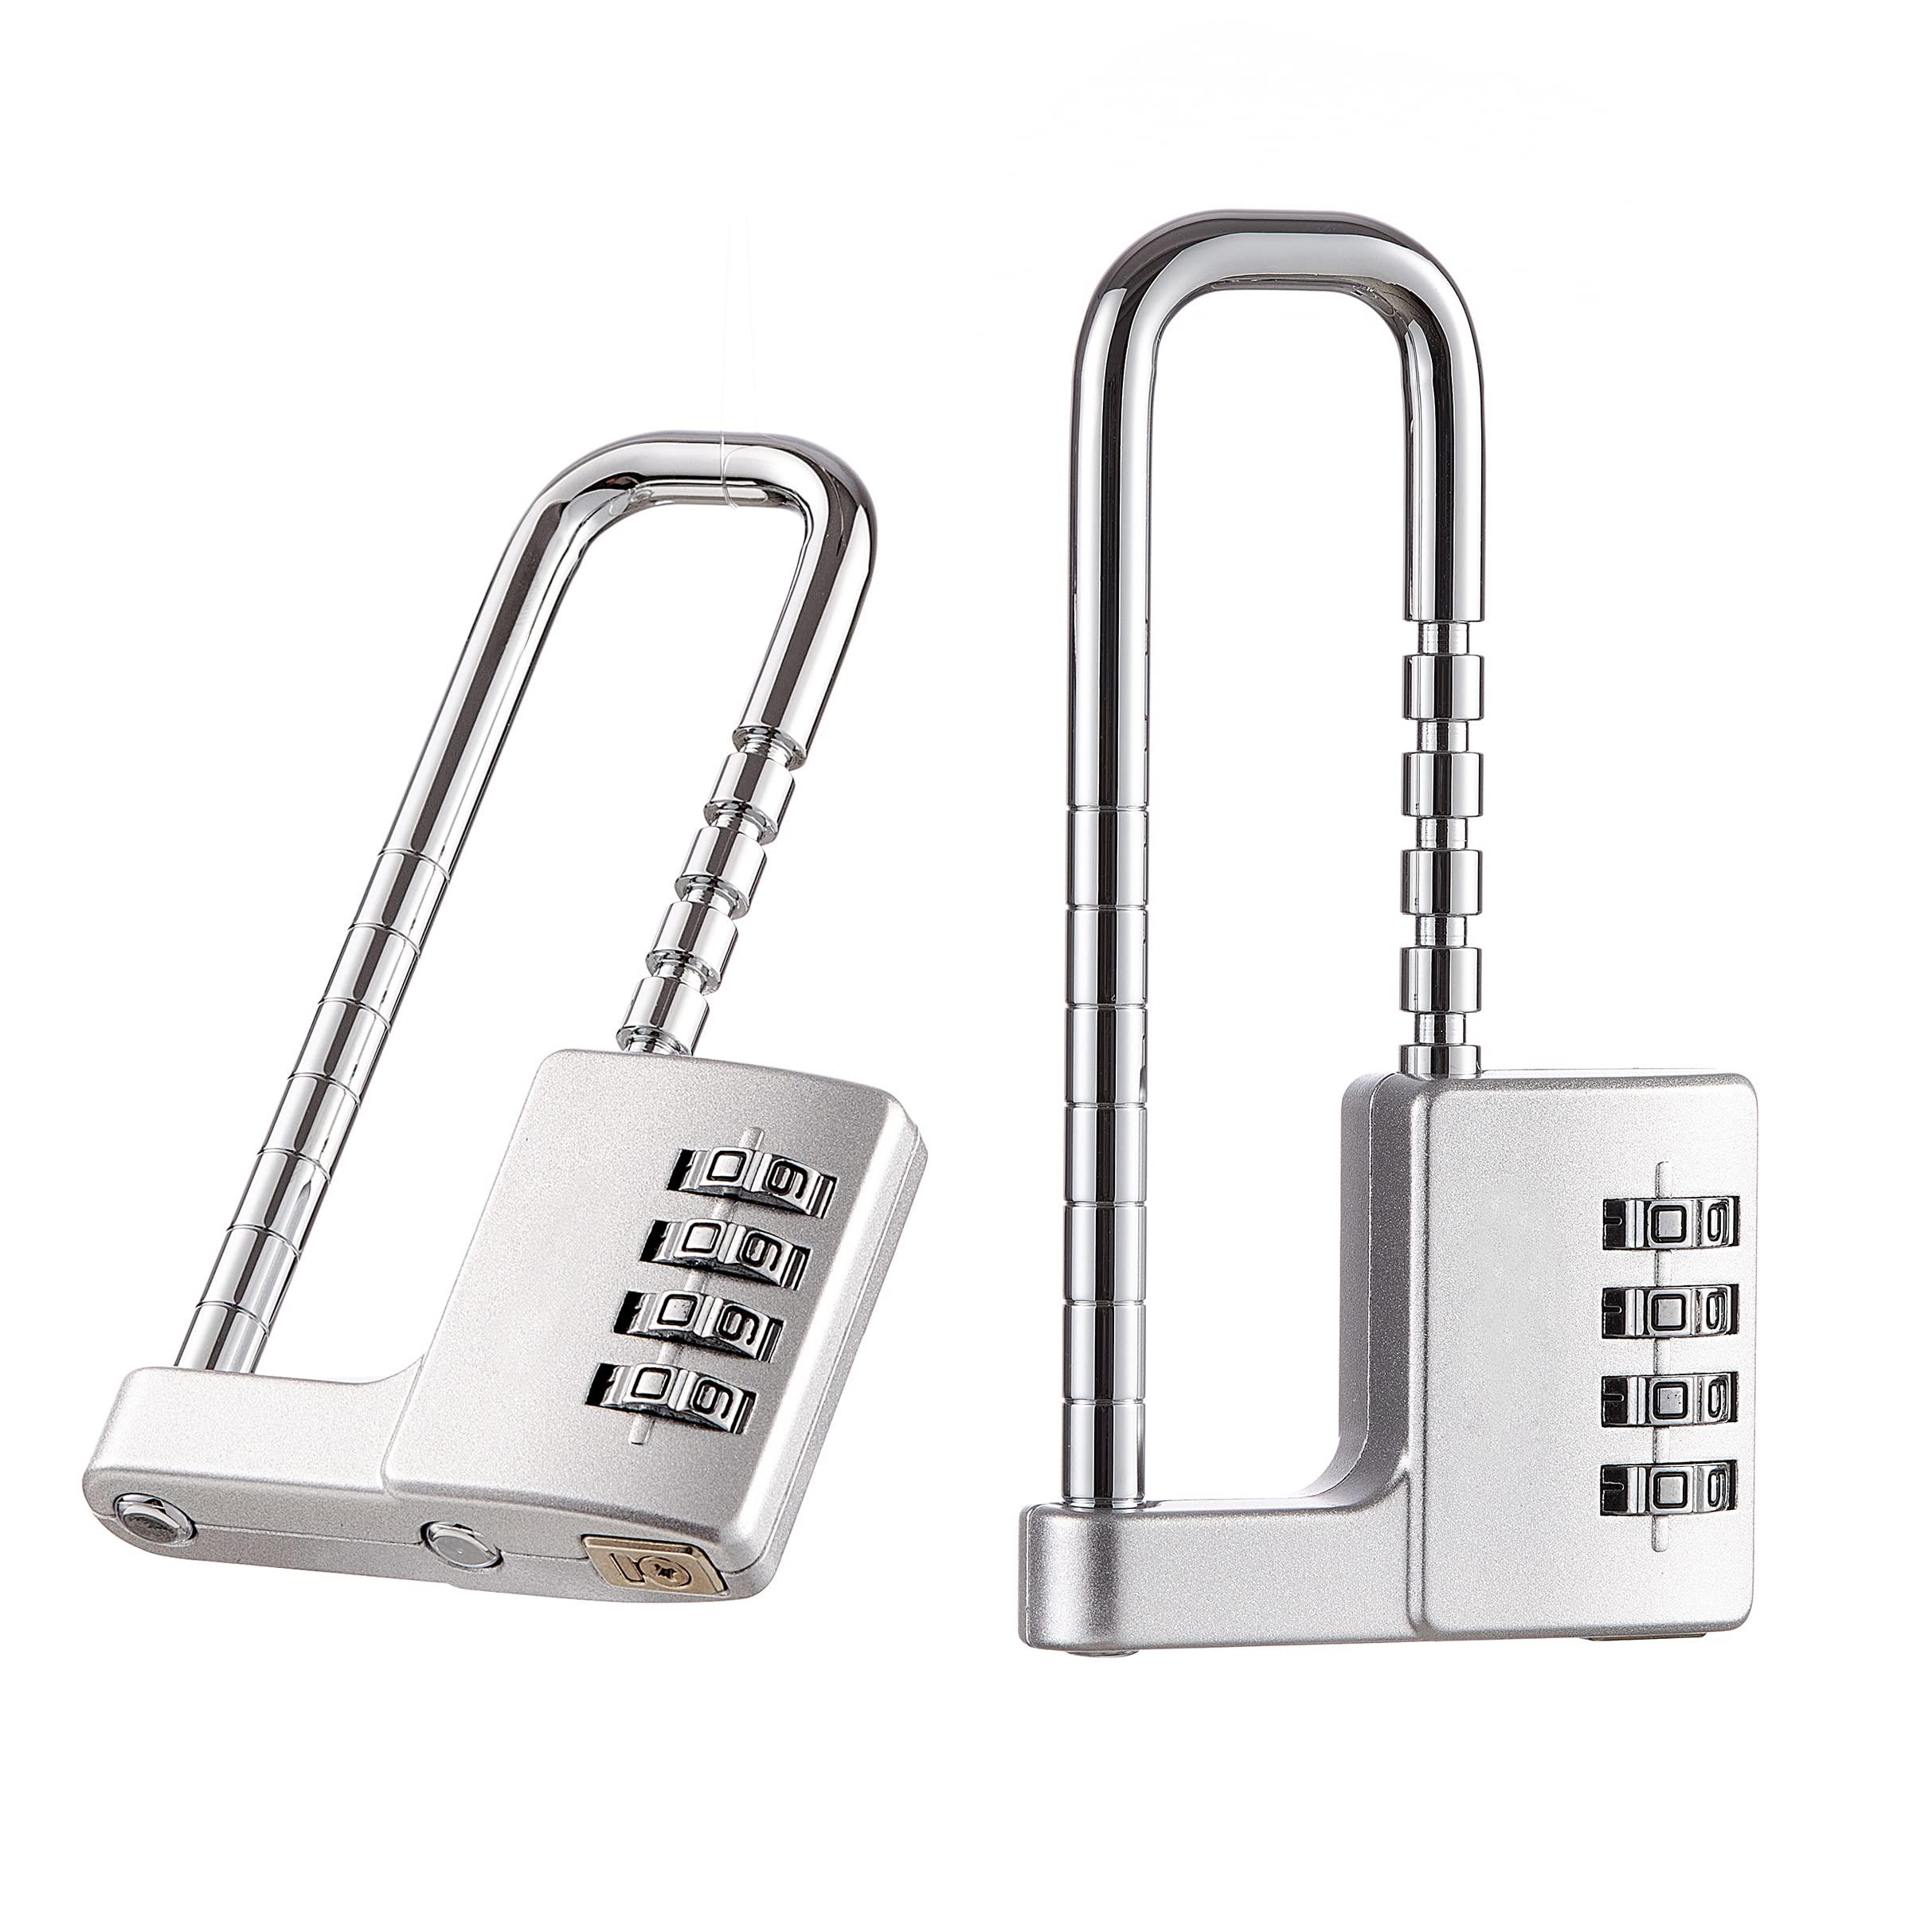 ZGSJ zgsj cabinet lock,combination padlock,stainless steel gym locker lock  code long adjustable shackle lock for outdoor, school